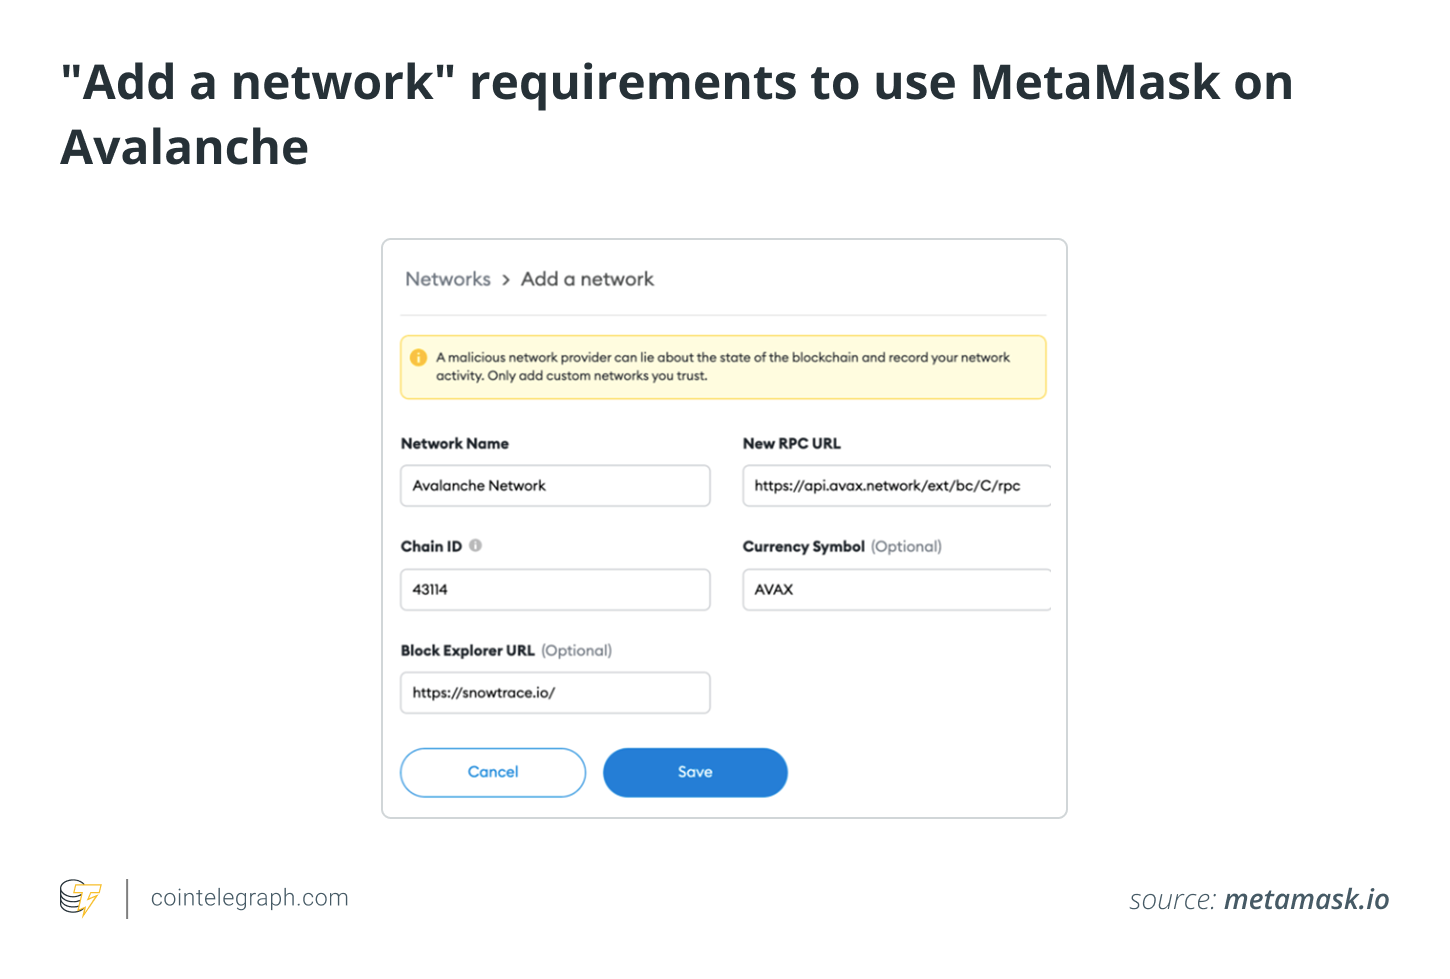 _Добавить сетевые_ требования для использования MetaMask в Avalanche